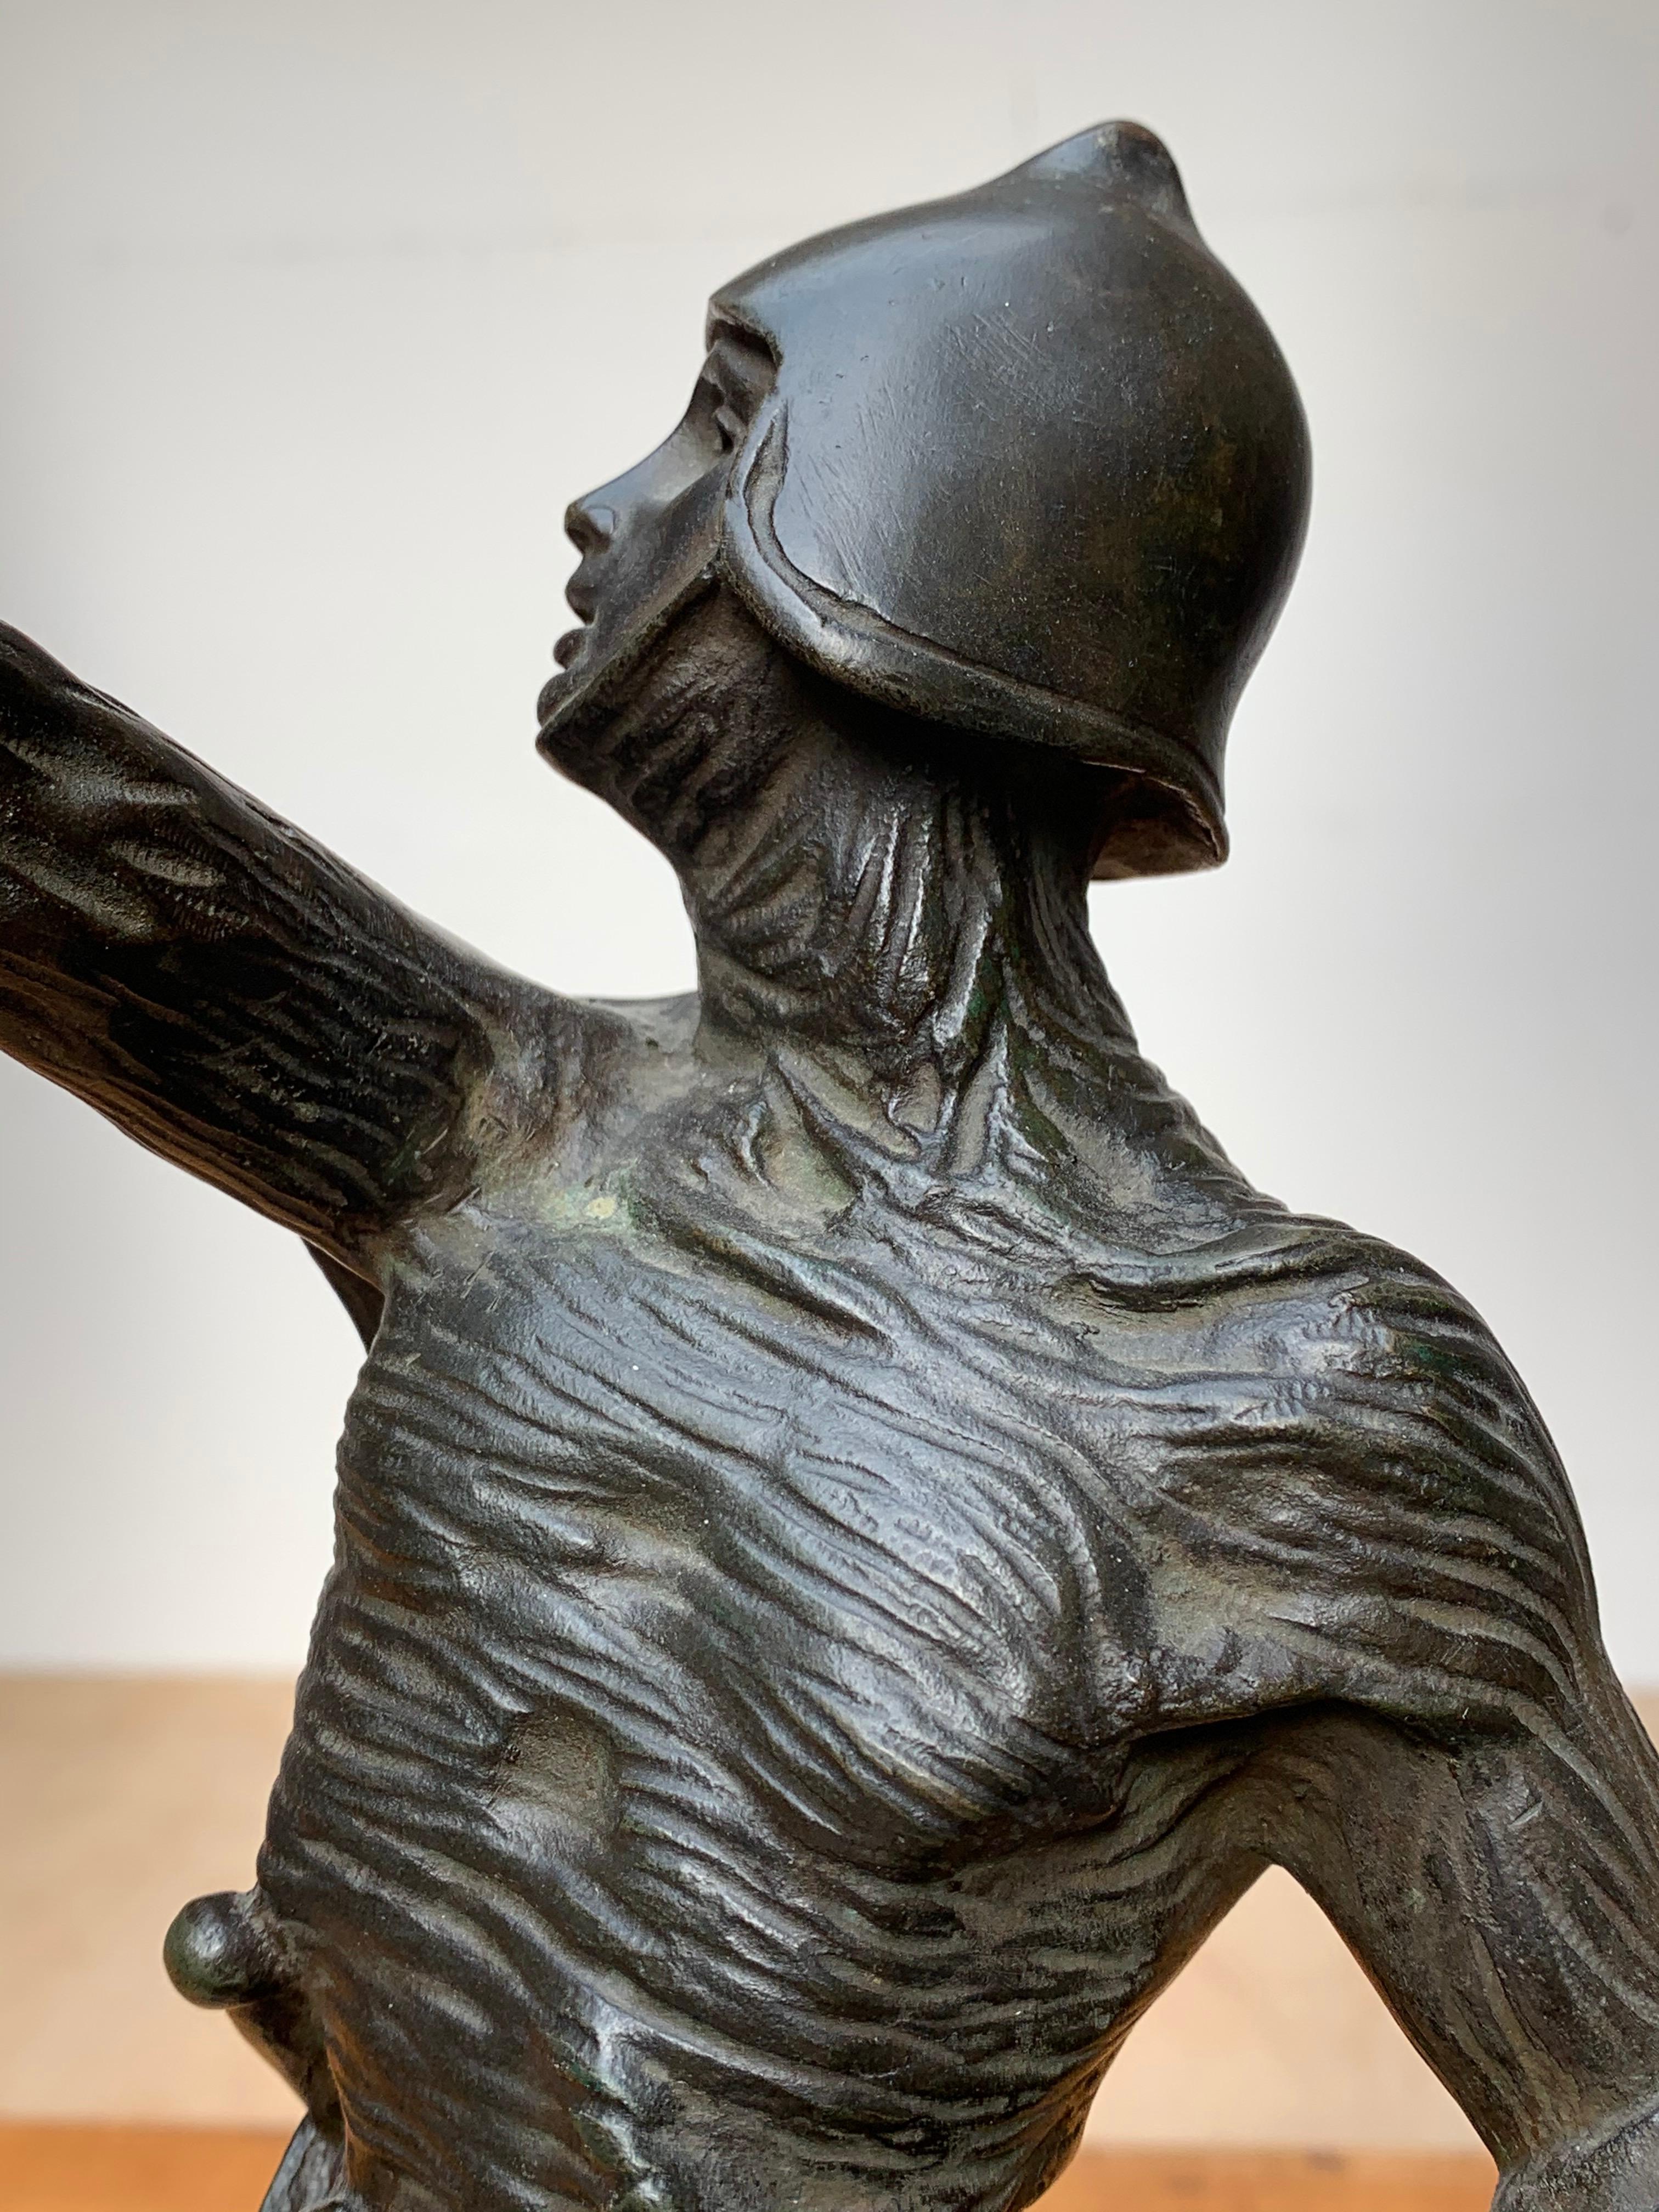 Antike, neuwertige und seltene Bronzestatue der Jeanne D'arc, der berühmtesten Schutzpatronin Frankreichs.

25 Jahre nach ihrem kurzen und heldenhaften Leben wurde Jeanne d'Arc, die im Alter von 19 Jahren zu Unrecht zum Tode verurteilt worden war,